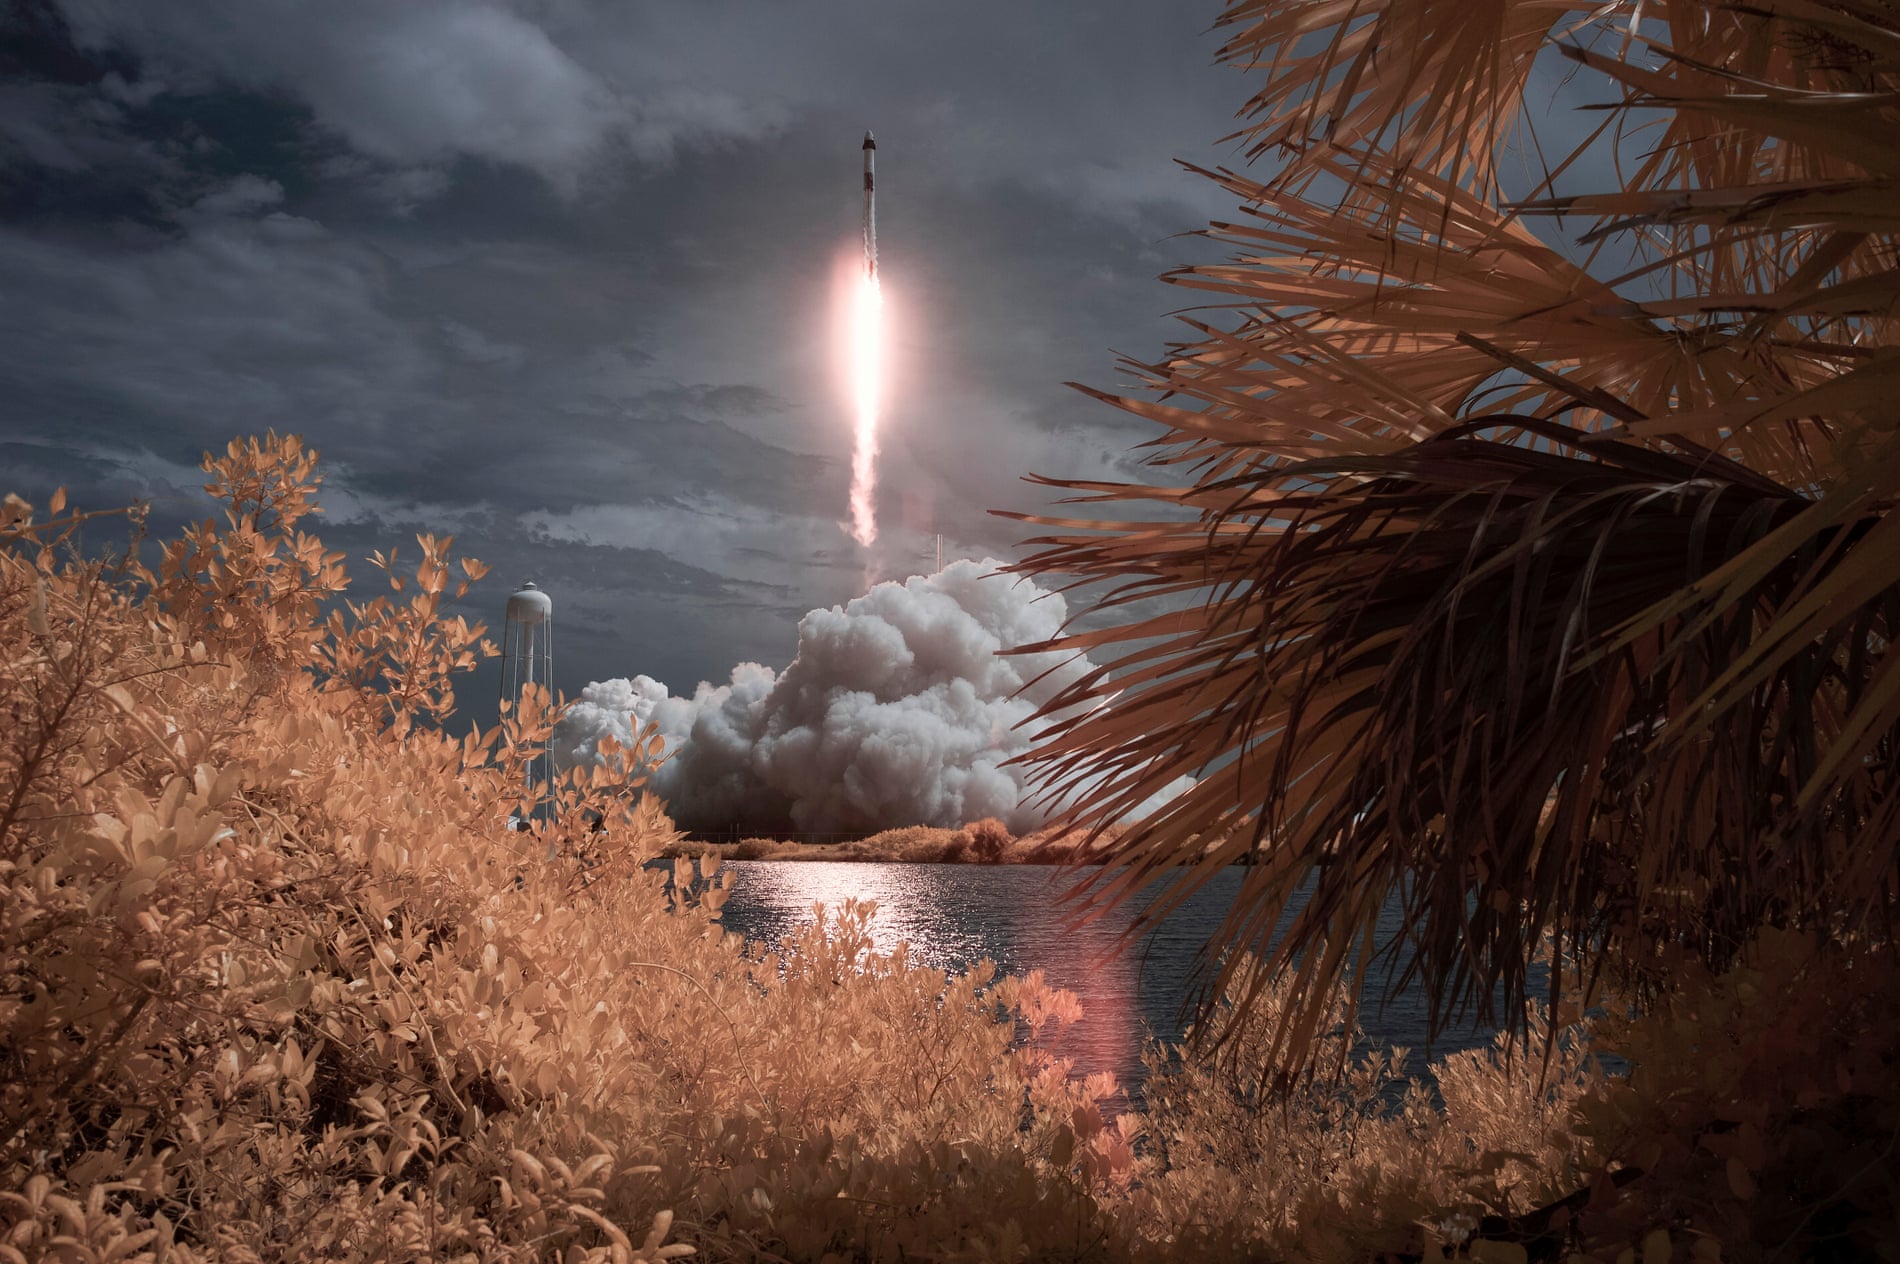 Crew Dragon kemasi Space X’ning Falcon 9 raketasi bilan fazoga ko‘tarilmoqda.